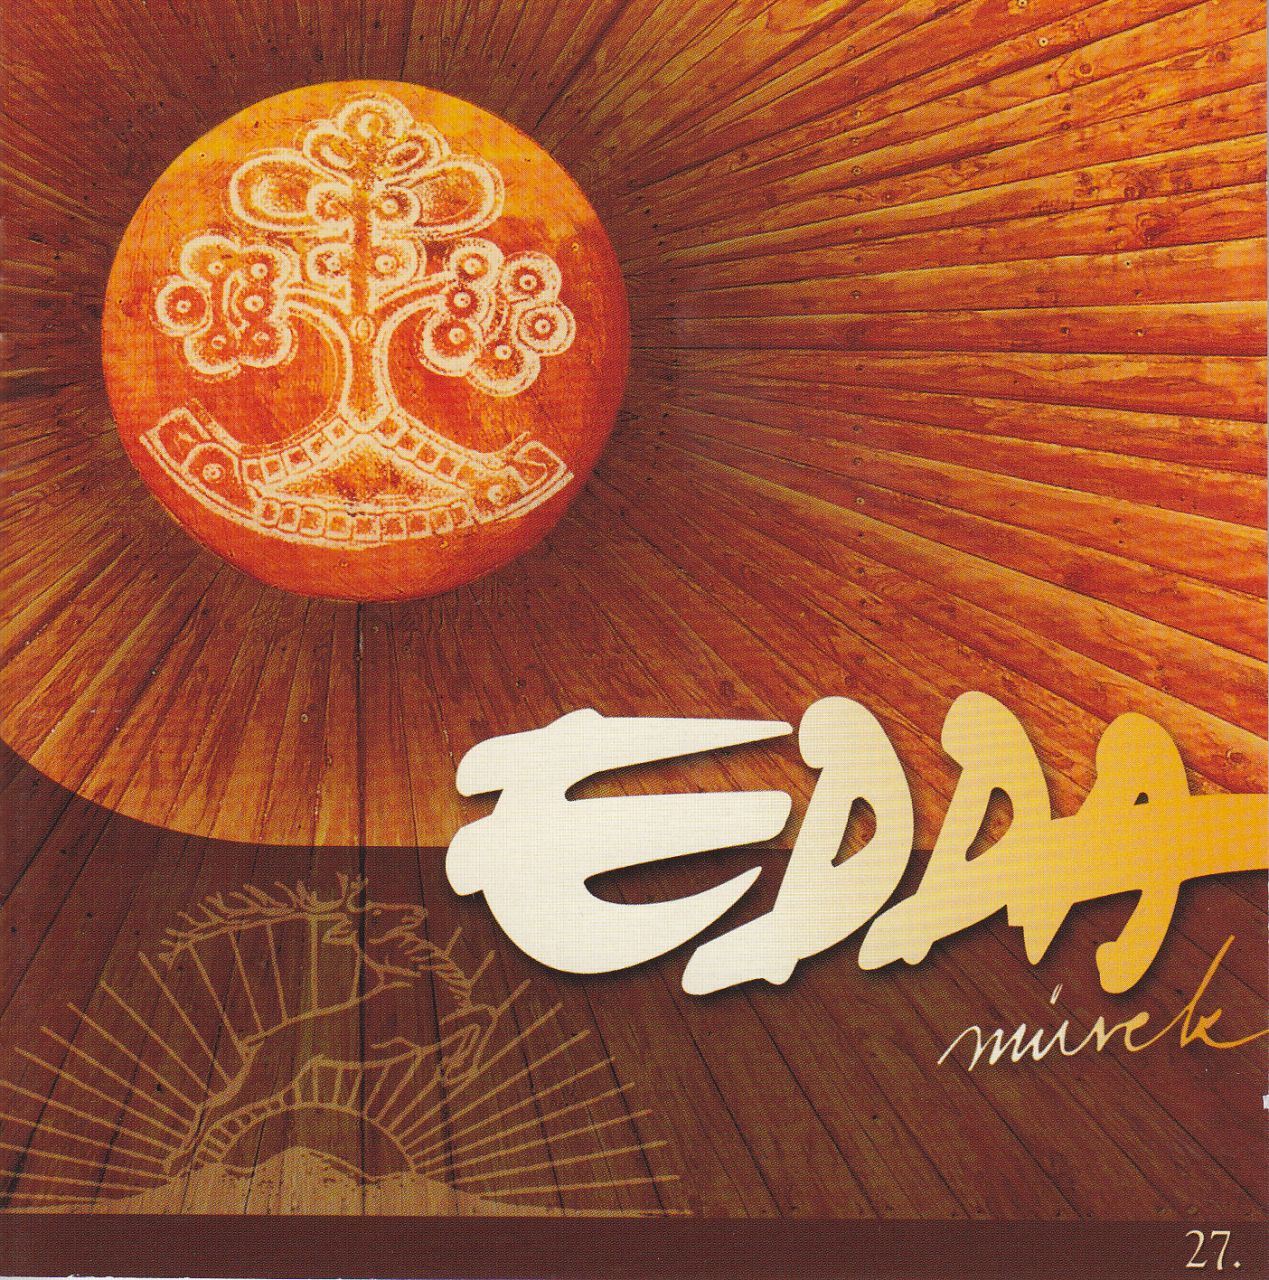 Edda Művek: Isten az úton (CD)